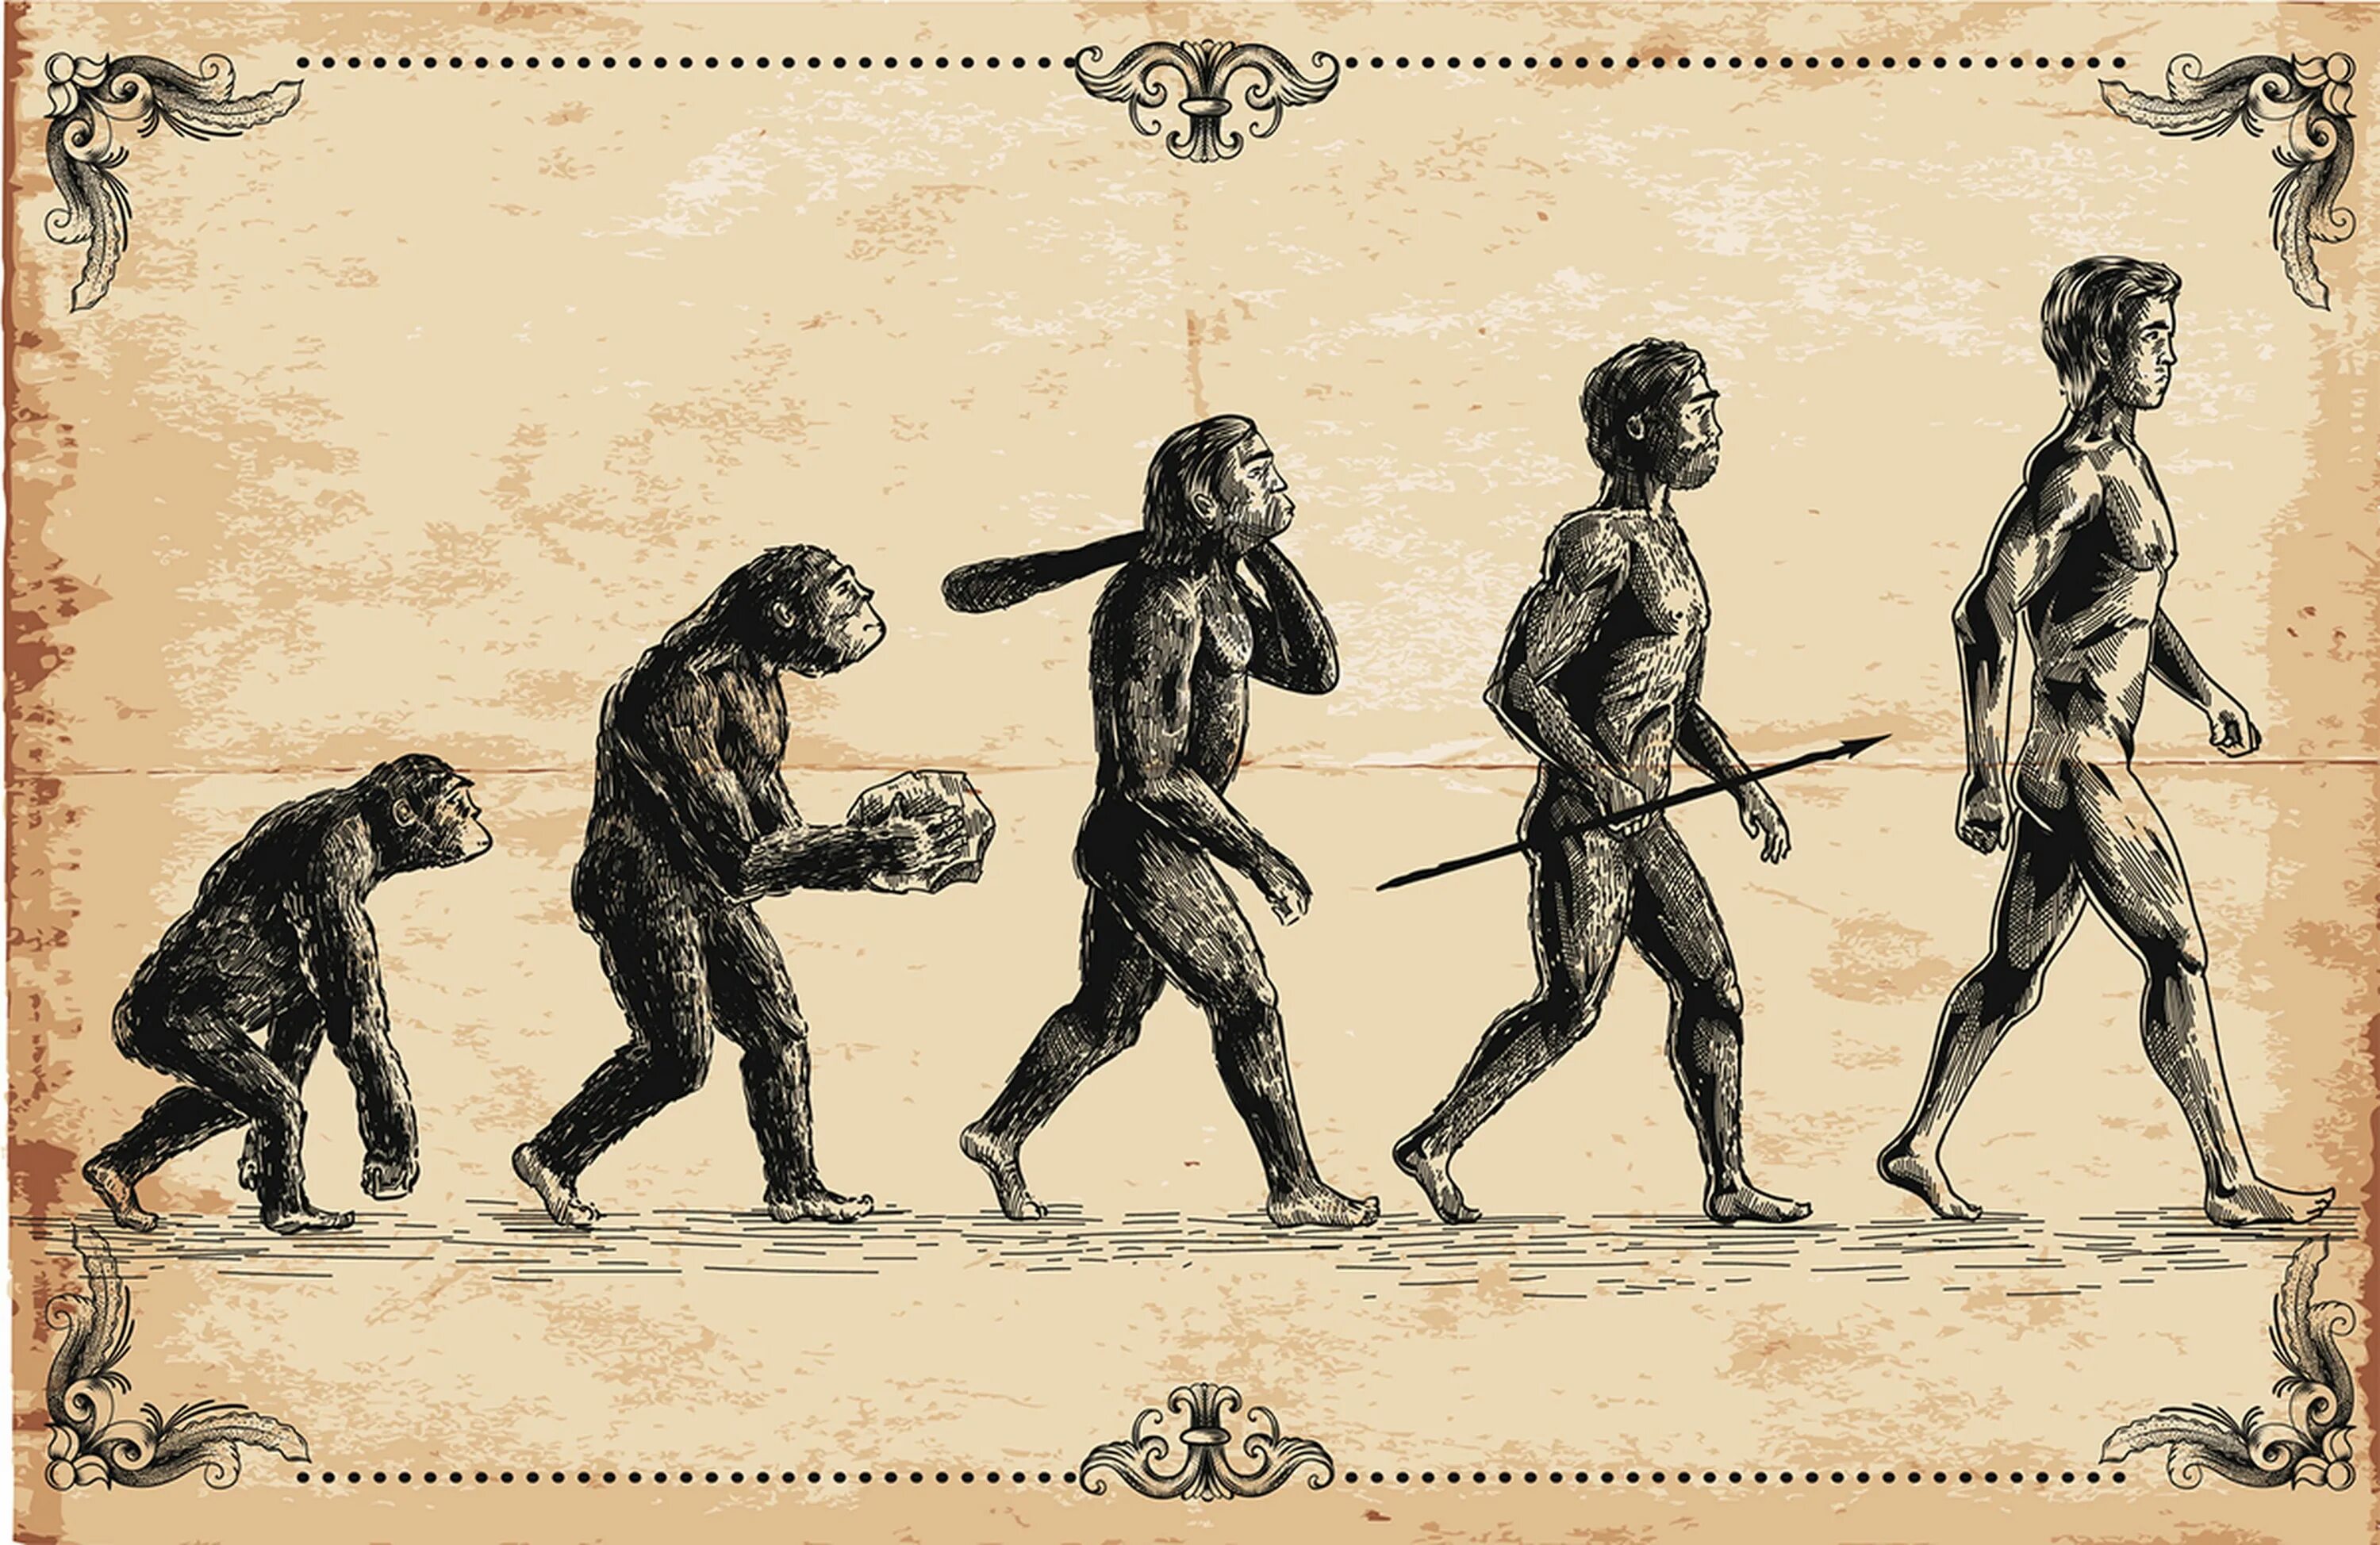 Предки людей жили на земле. Эволюция человека homo sapiens. Теория Дарвина о эволюции человека.